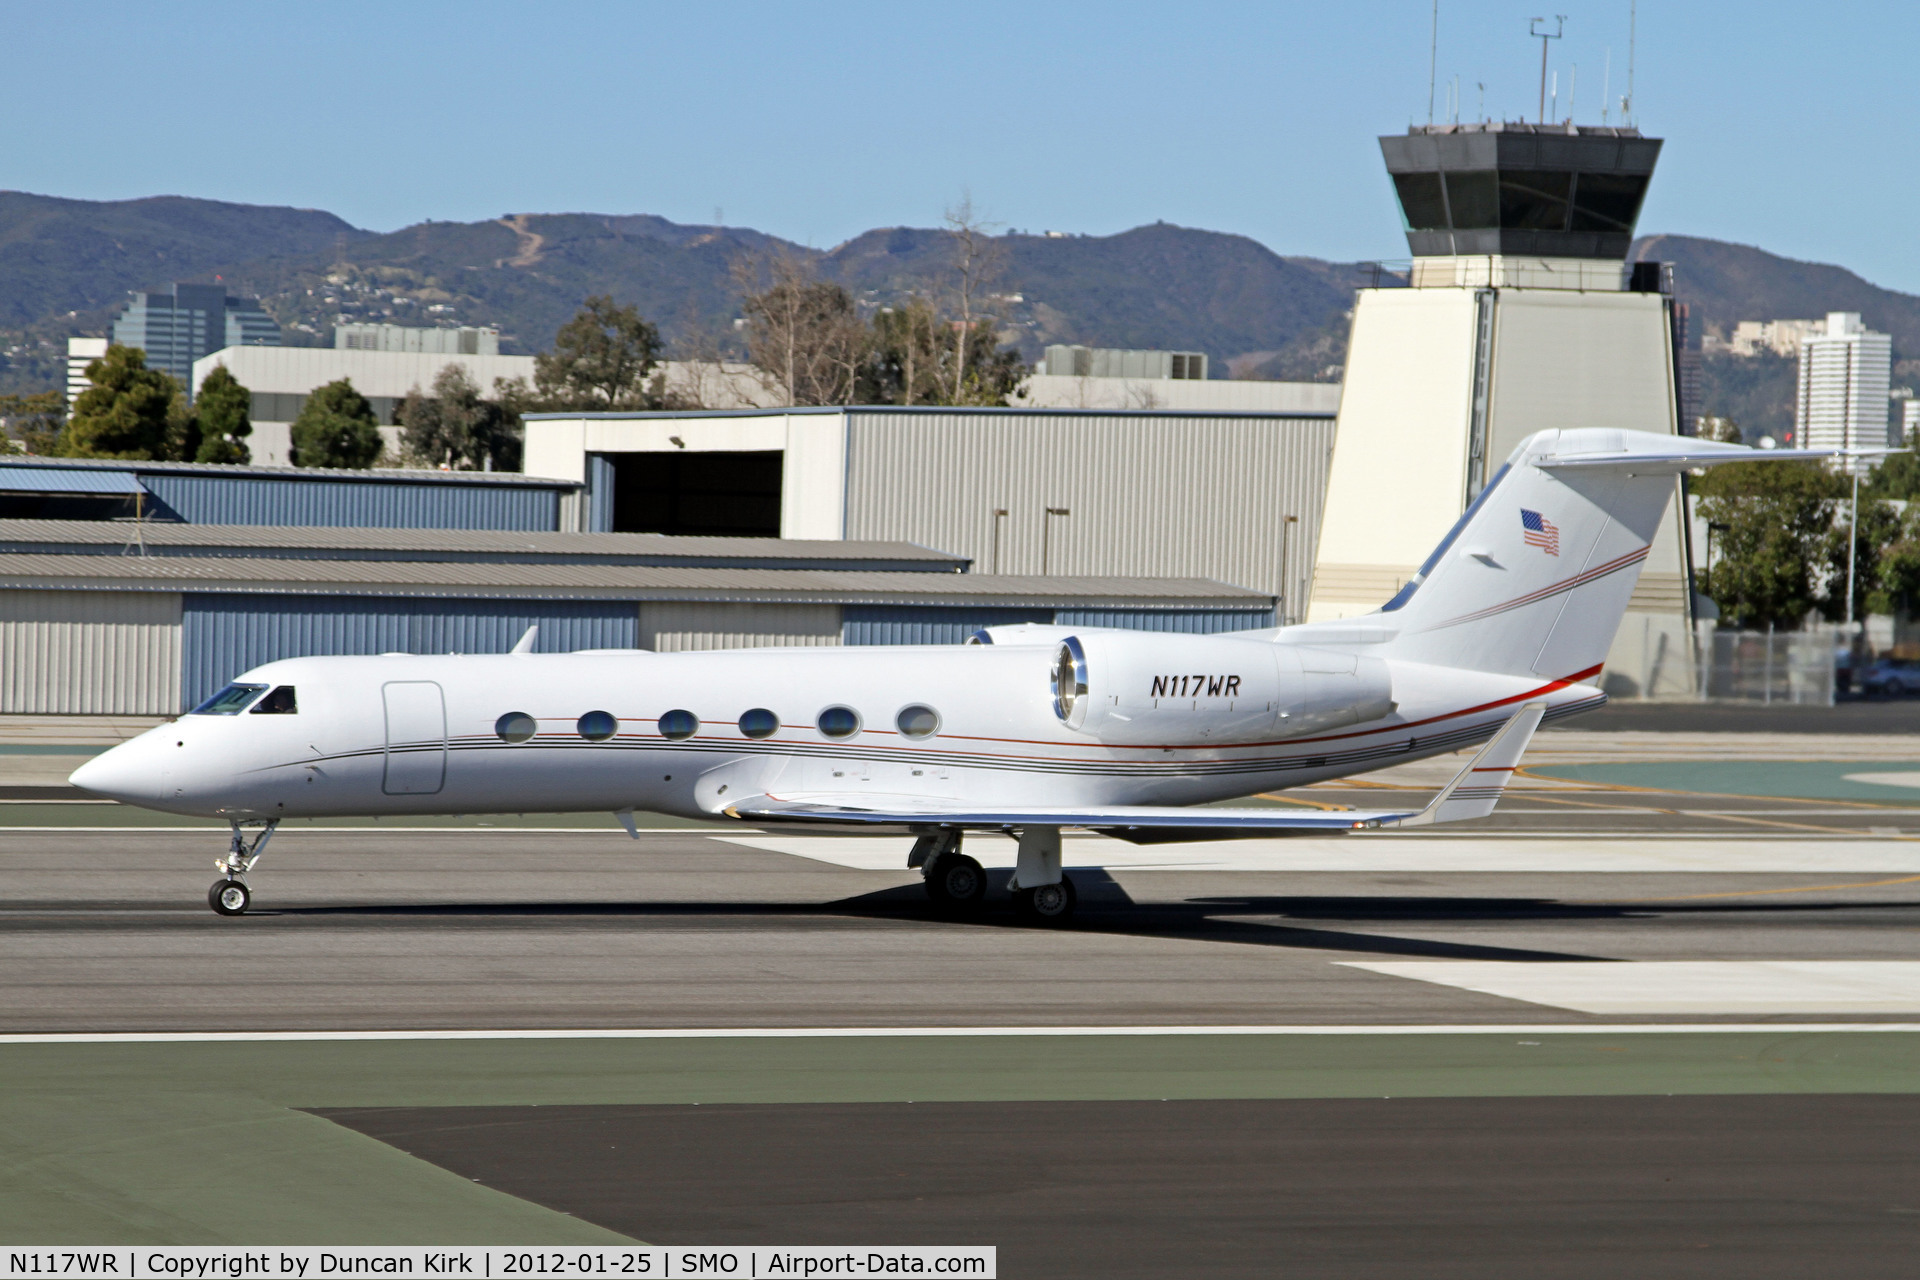 N117WR, 2005 Gulfstream Aerospace GIV-X (G350) C/N 4015, Taking off from Santa Monica